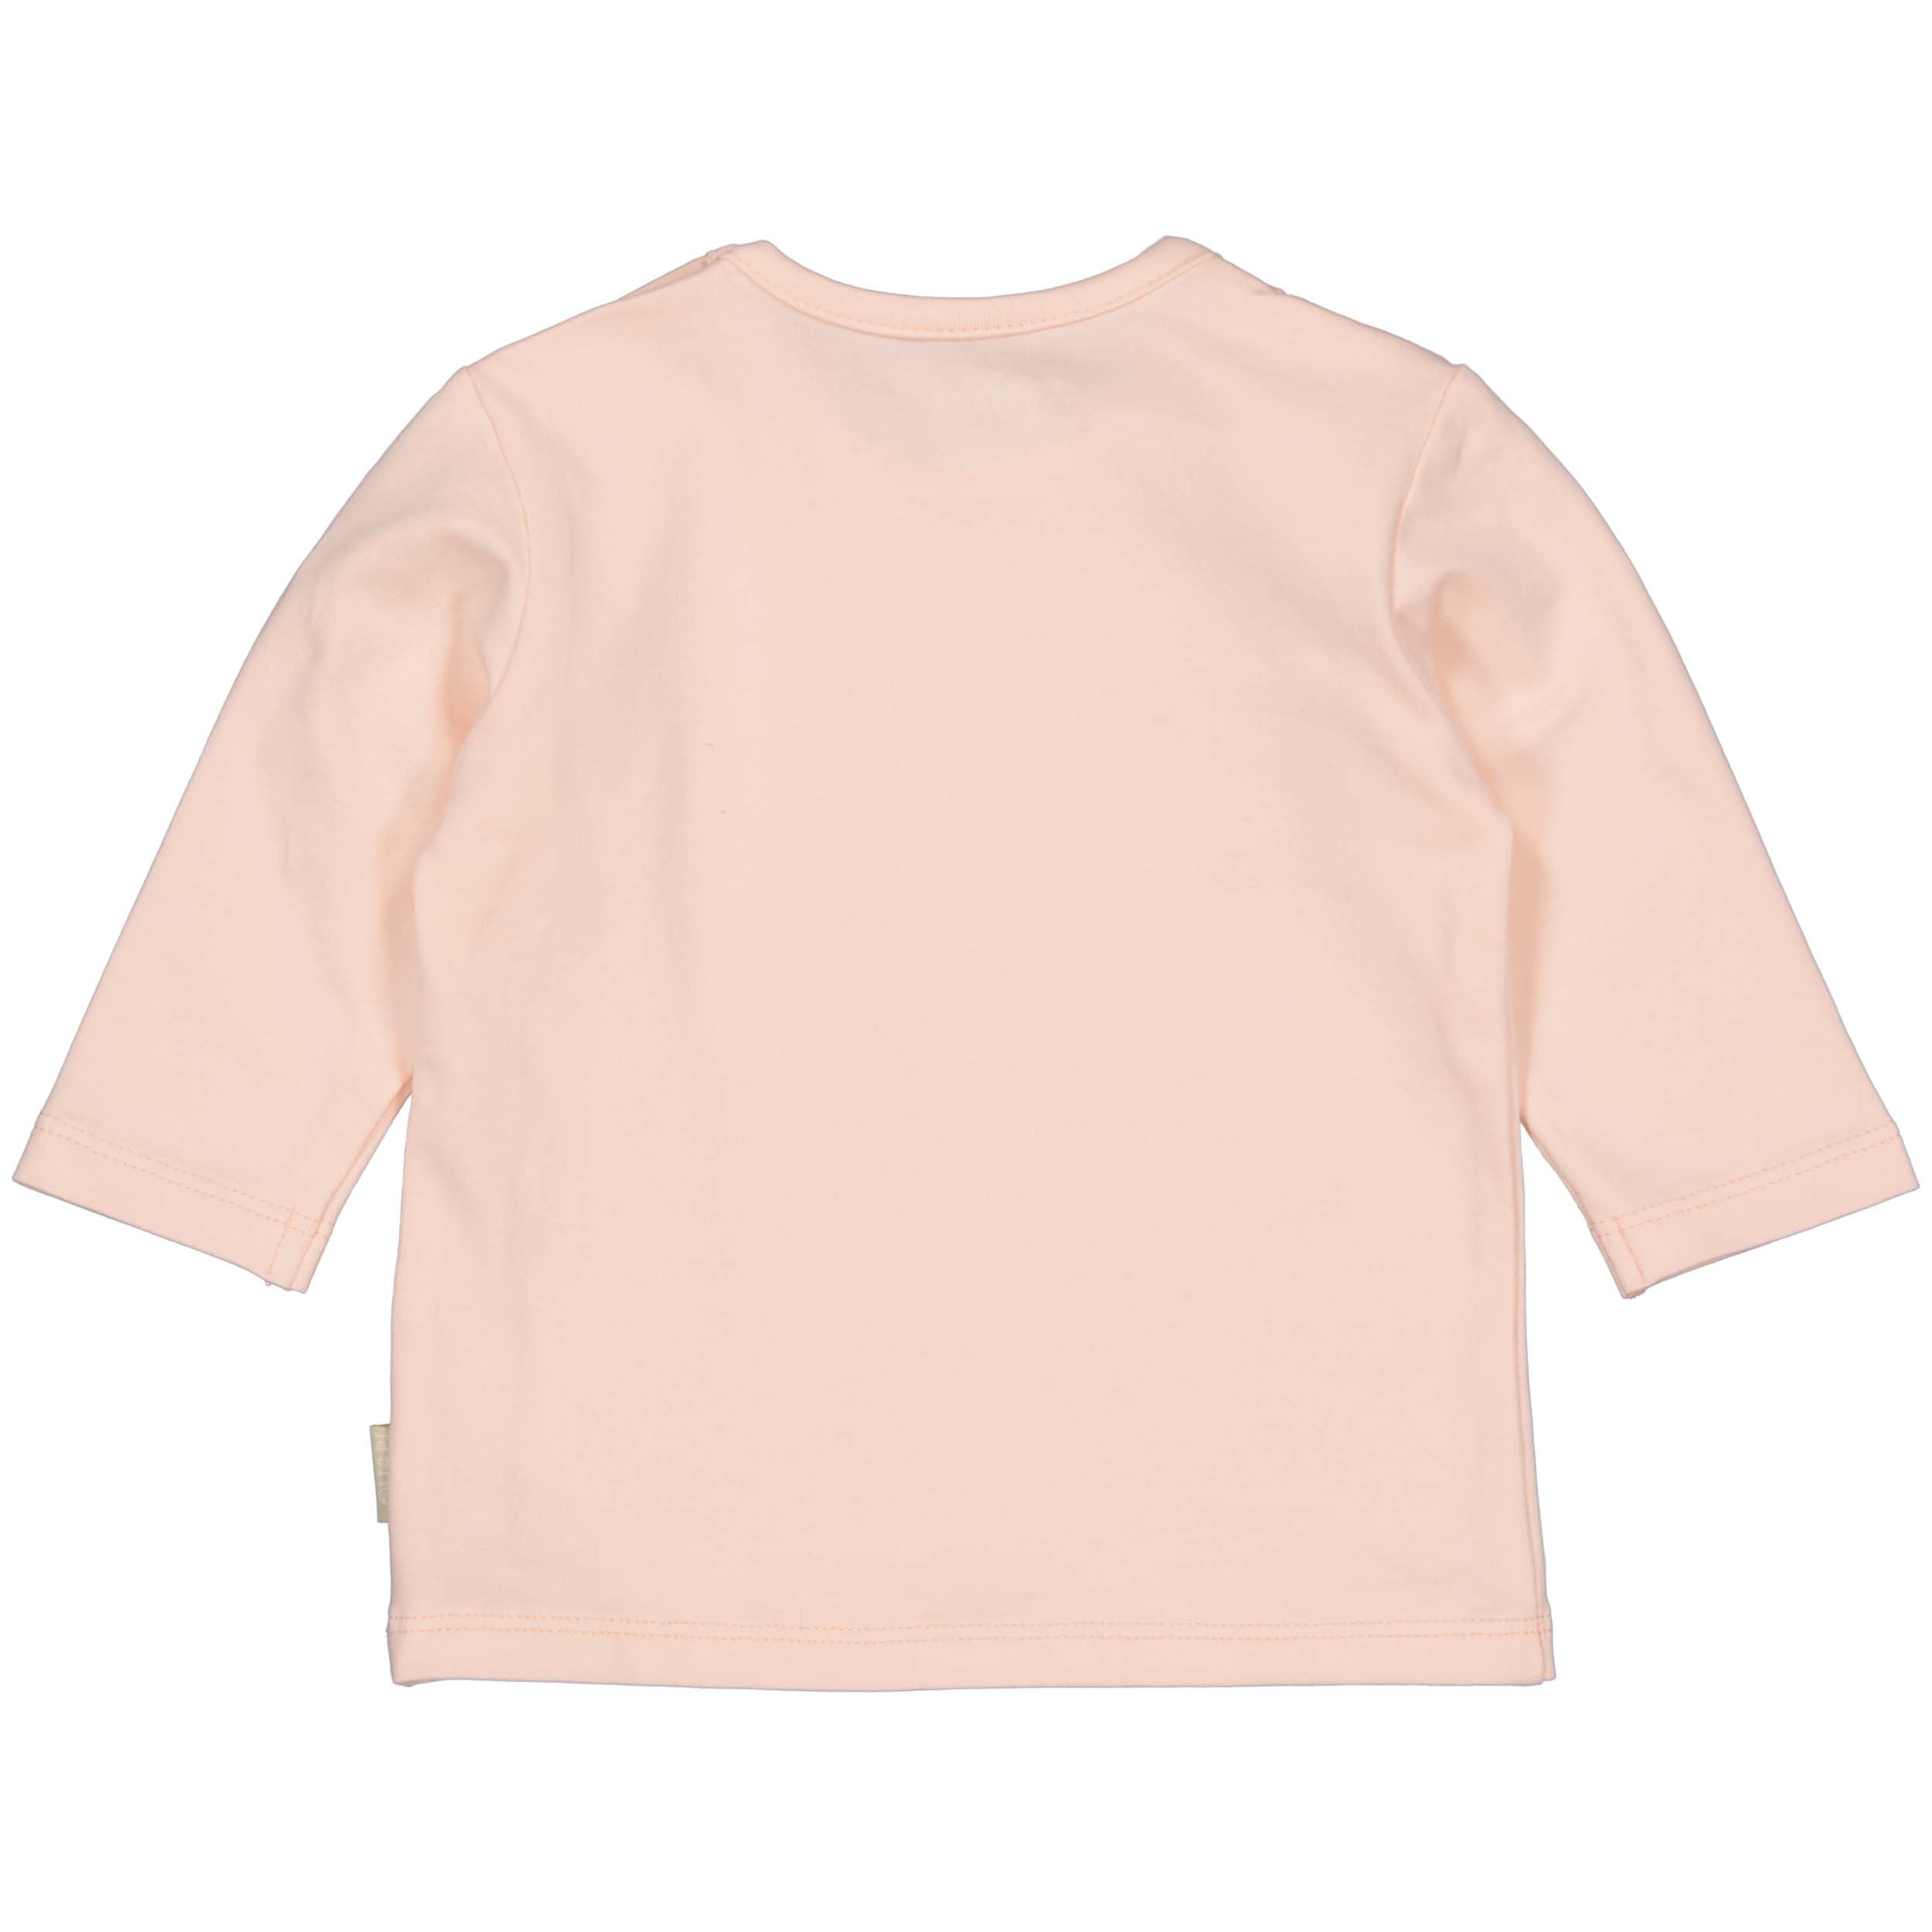 Meisjes Longsleeve Sanne van Quapi Newborn in de kleur Pink Blush in maat 68.